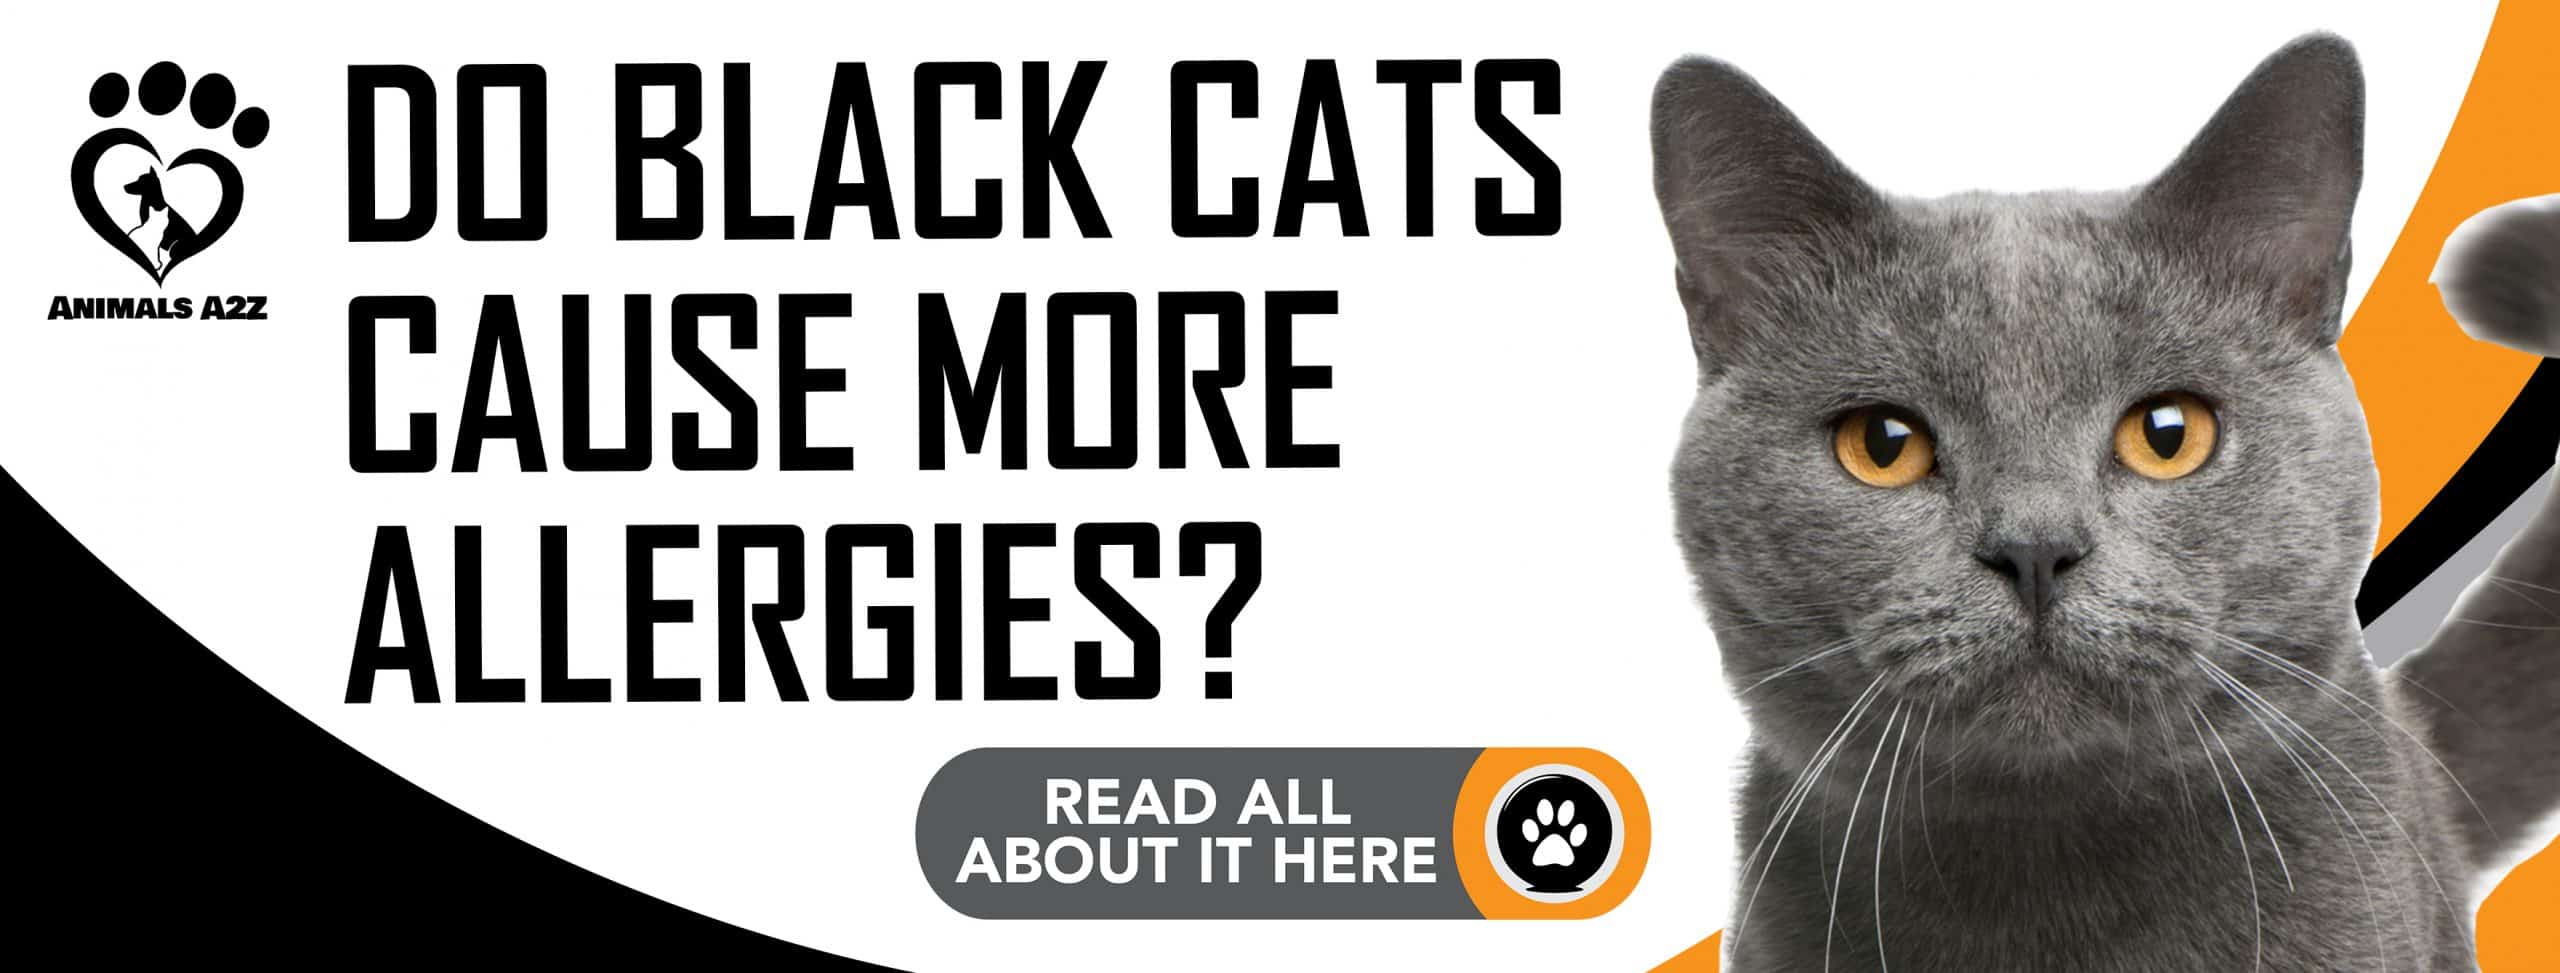 Verursachen schwarze Katzen mehr Allergien?